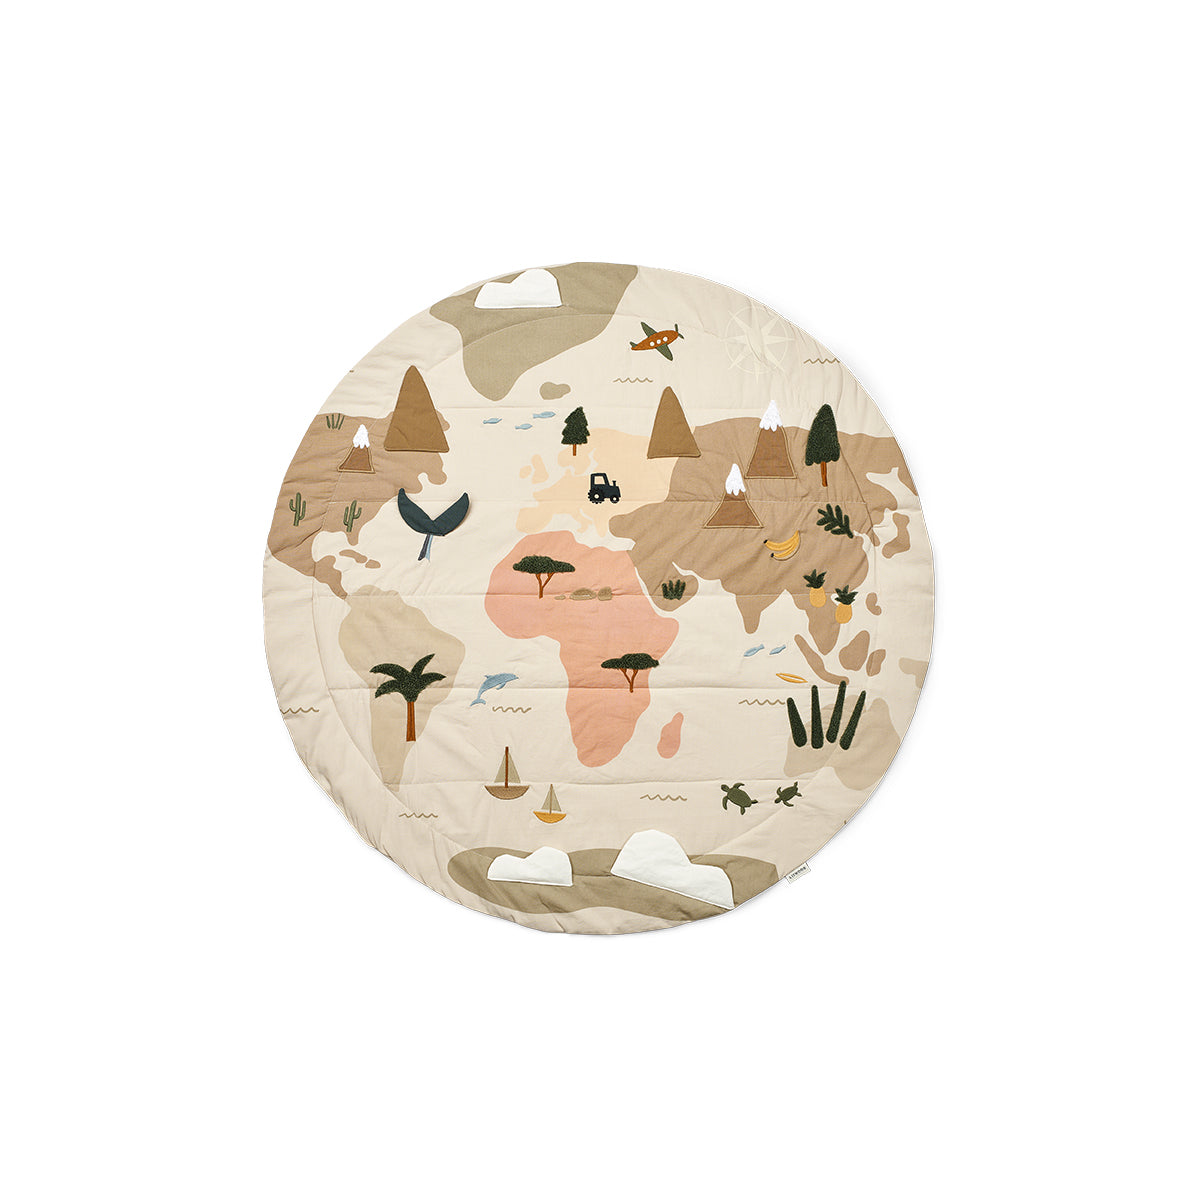 Dit superleuke Adonna speelkleed world map sandy is makkelijk op te bergen en mee te nemen en prikkelt de fantasie van jouw kleintje. Het kleed bevat leuke sensorische details en zal dankzij de verschillende thema's die te zien zijn op het kleed, zorgen voor uren speelplezier. VanZus